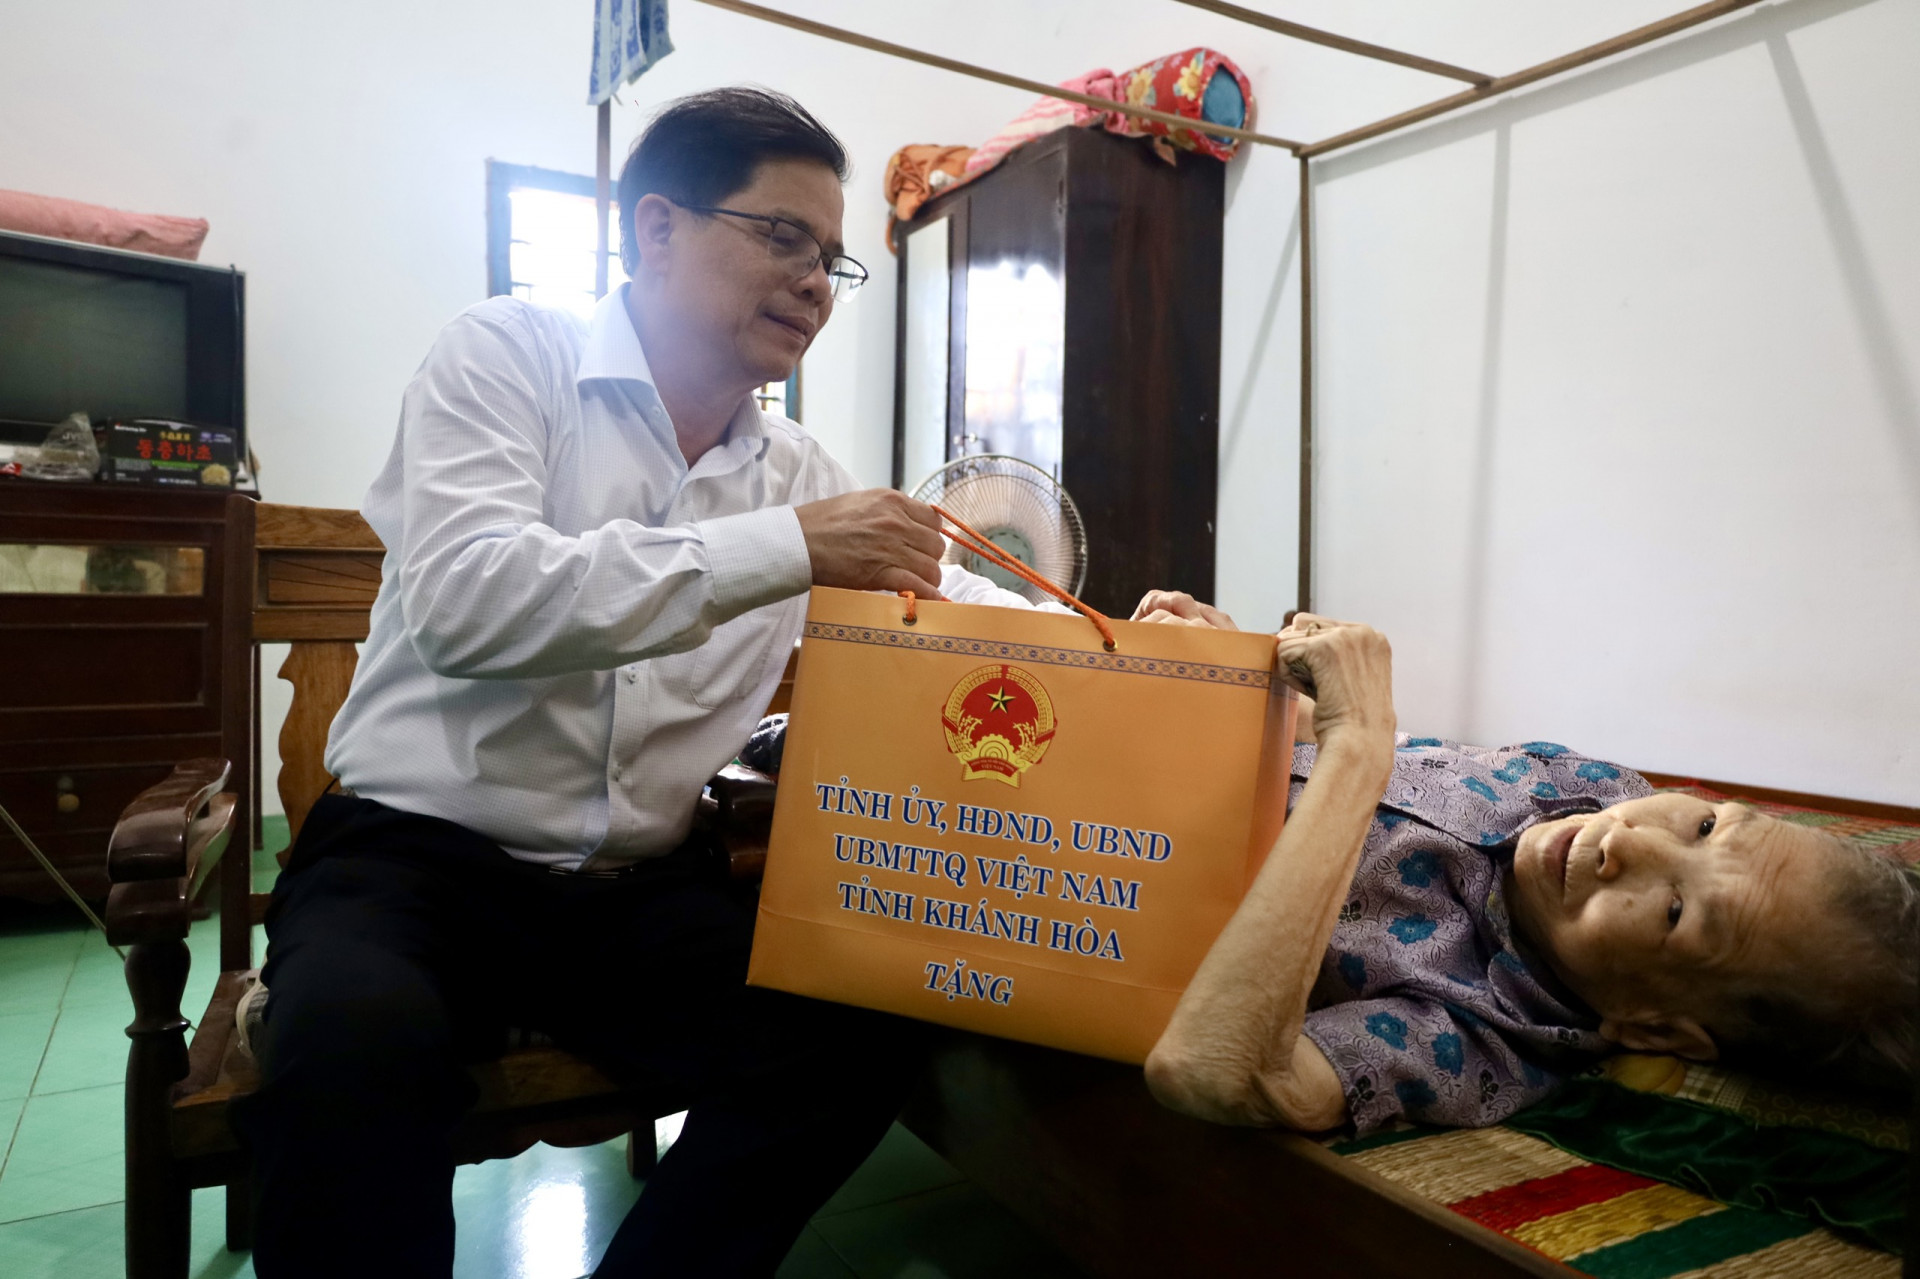 Đồng chí Nguyễn Tấn Tuân thăm hỏi, tặng quà cho bà Hà Thị Kiểu.